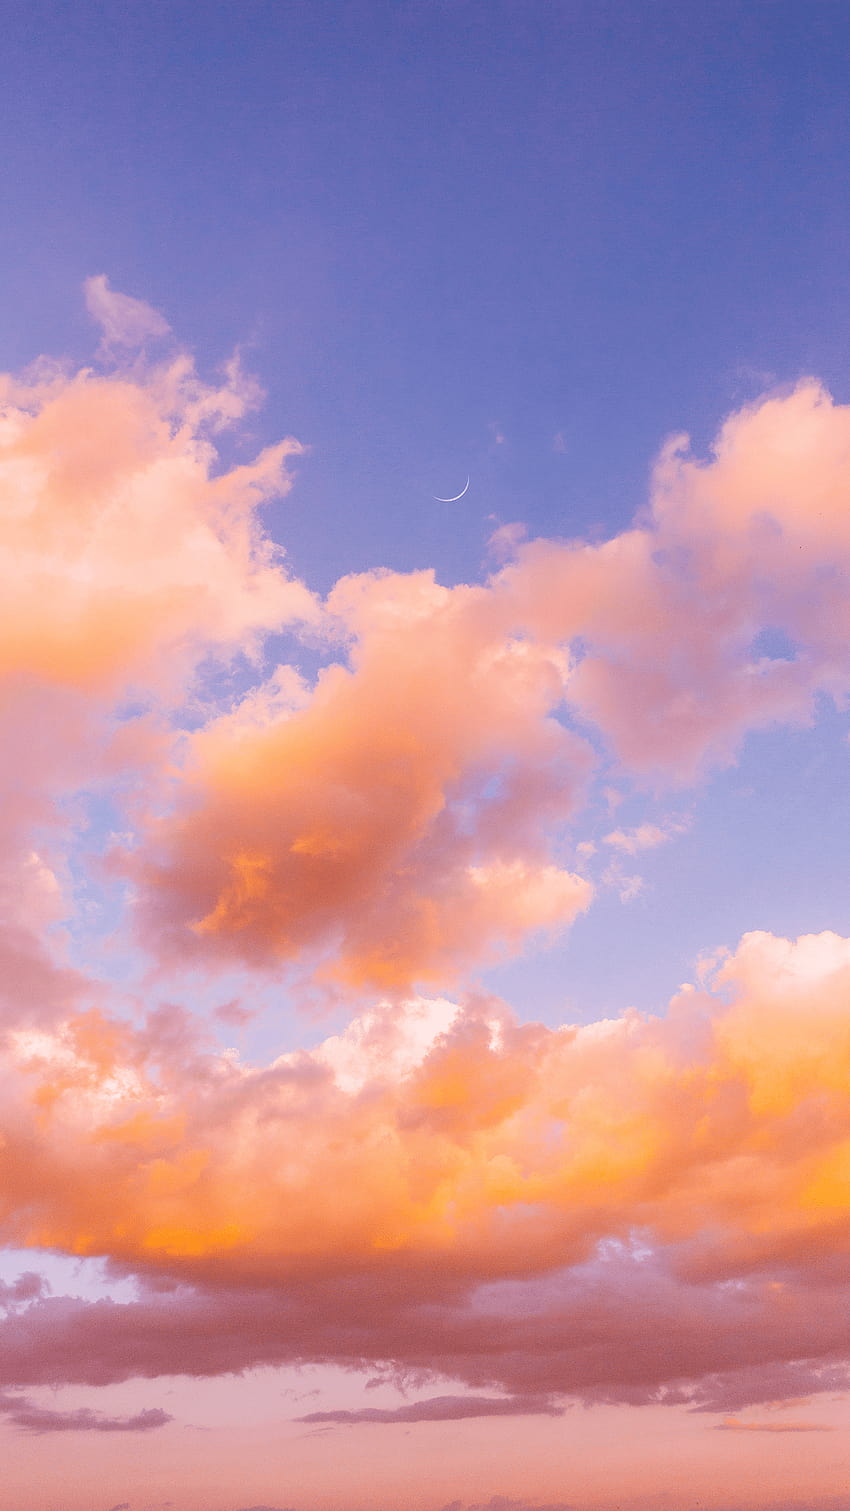 Hãy cùng tận hưởng những khoảnh khắc tuyệt đẹp của đám mây trong hình ảnh, với màu sắc và hình dáng đặc biệt gây ấn tượng. Những bức ảnh đám mây tuyệt đẹp sẽ khiến bạn thư giãn và tận hưởng nét đẹp tự nhiên của thế giới này.